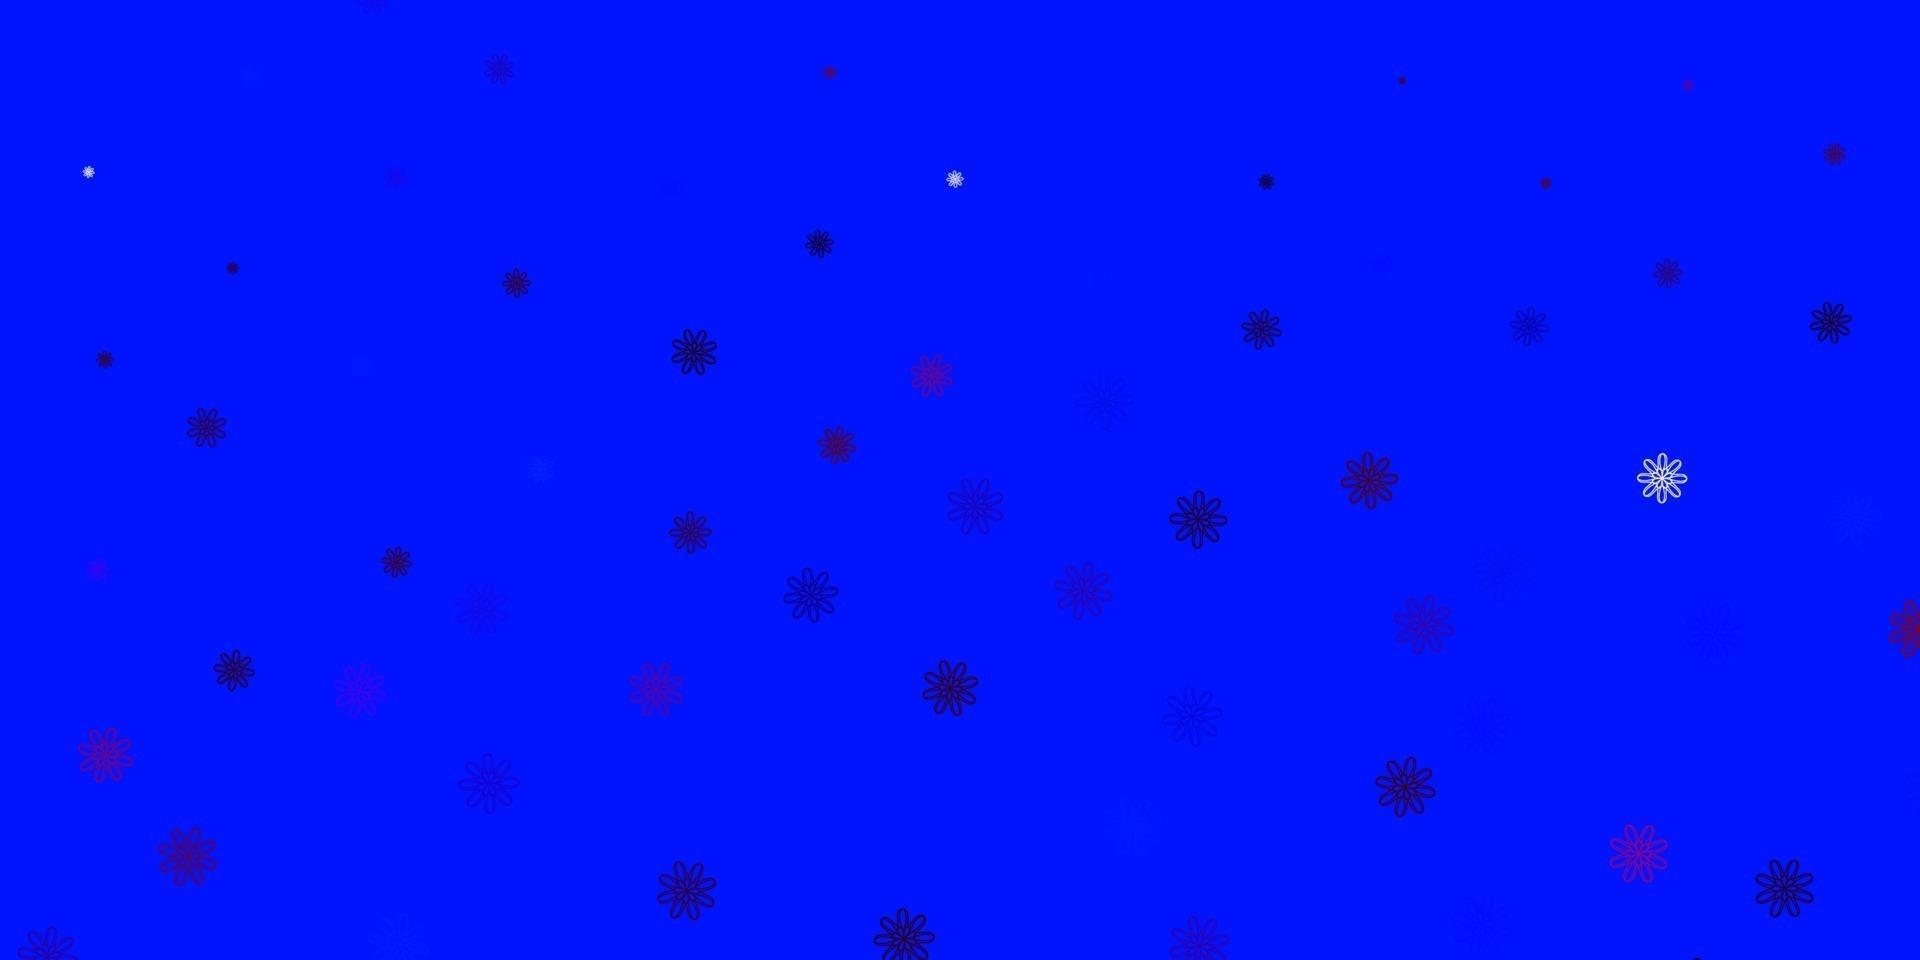 ljusblå, röd vektor doodle mönster med blommor.